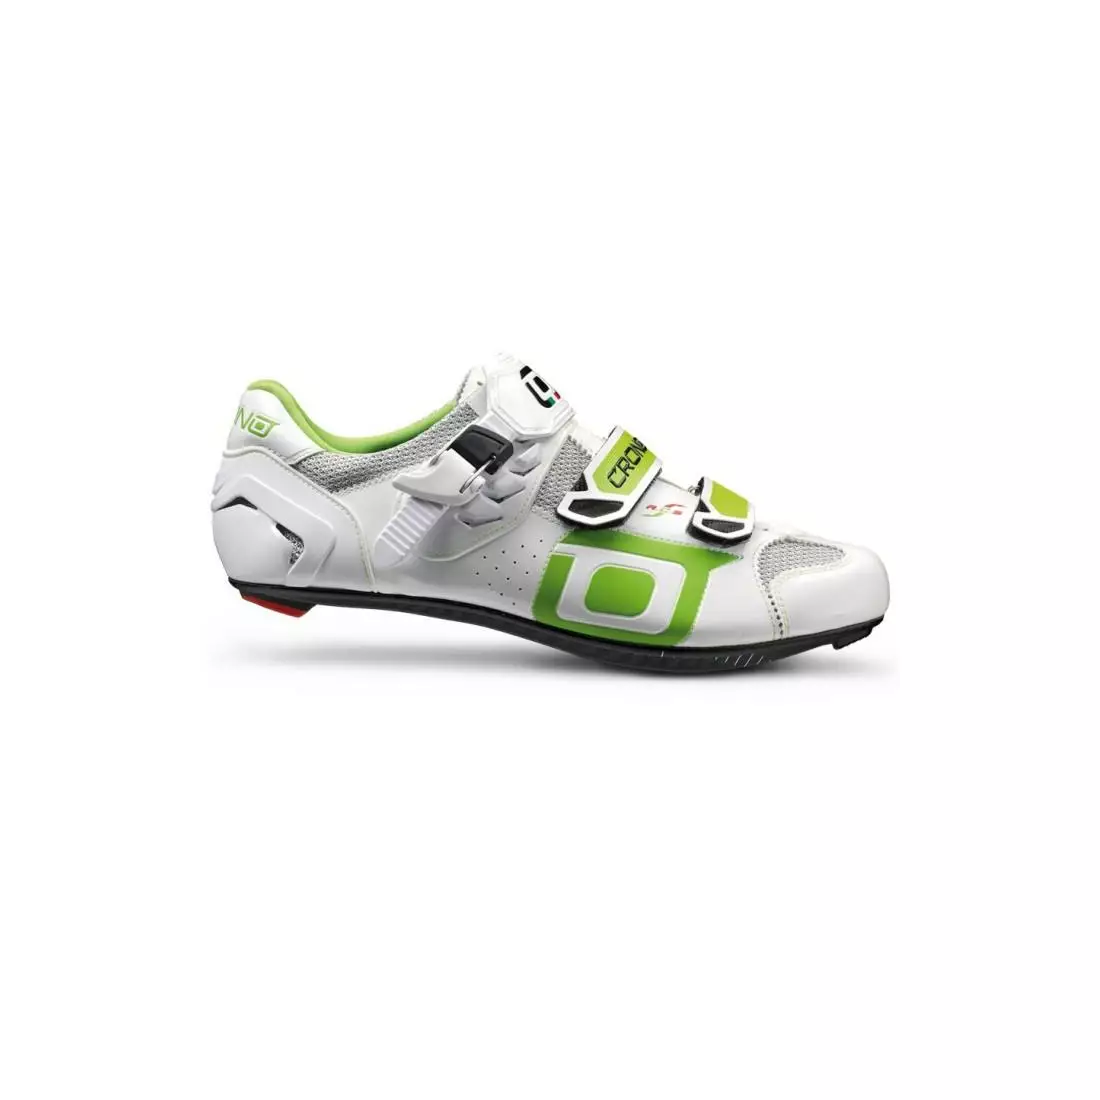 CRONO CLONE NYLON - road cycling shoes - color: white/green